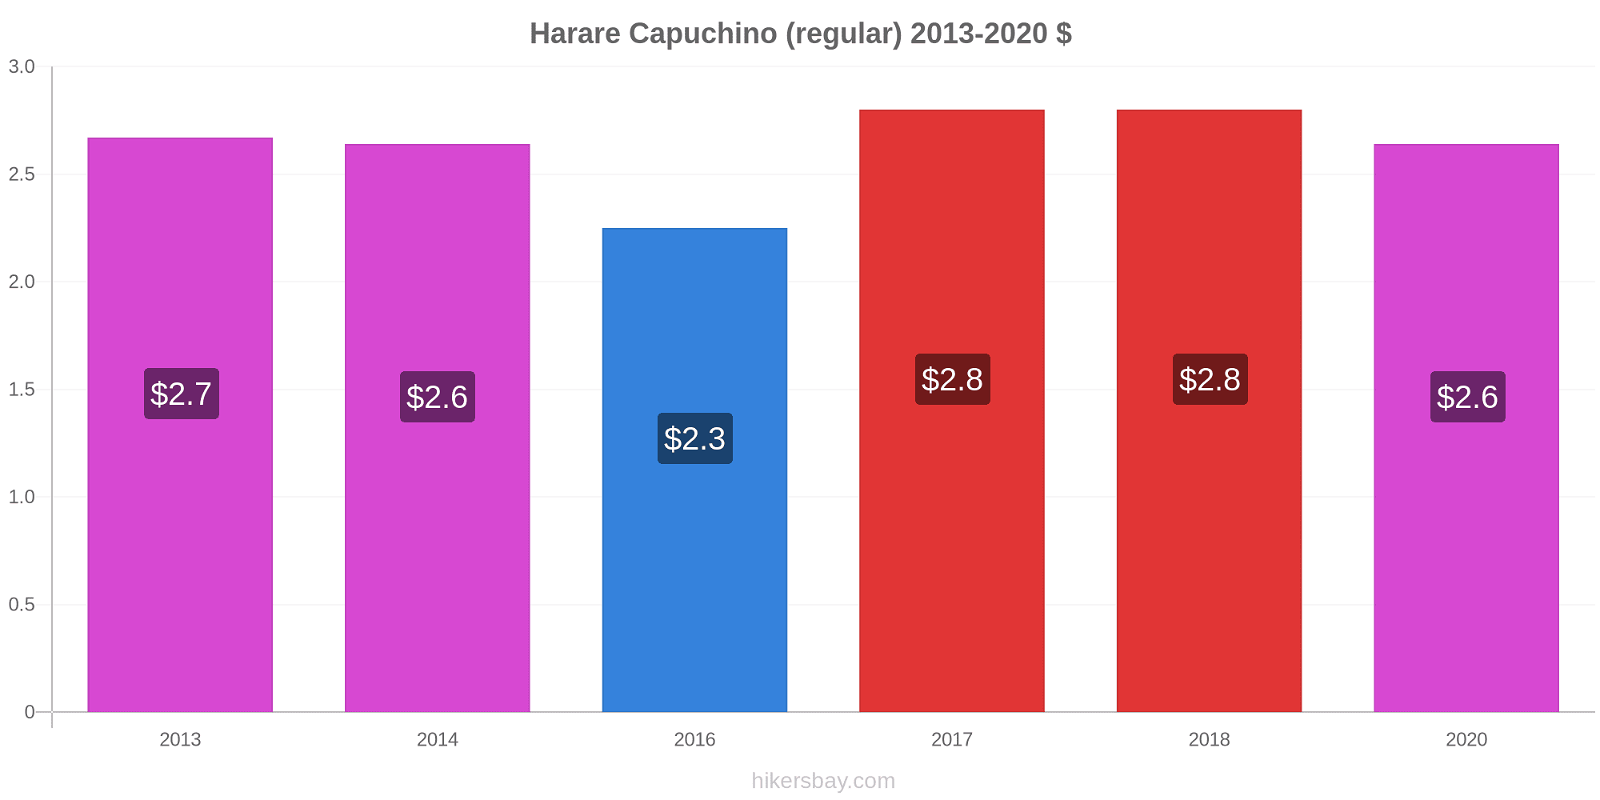 Harare cambios de precios Capuchino (regular) hikersbay.com